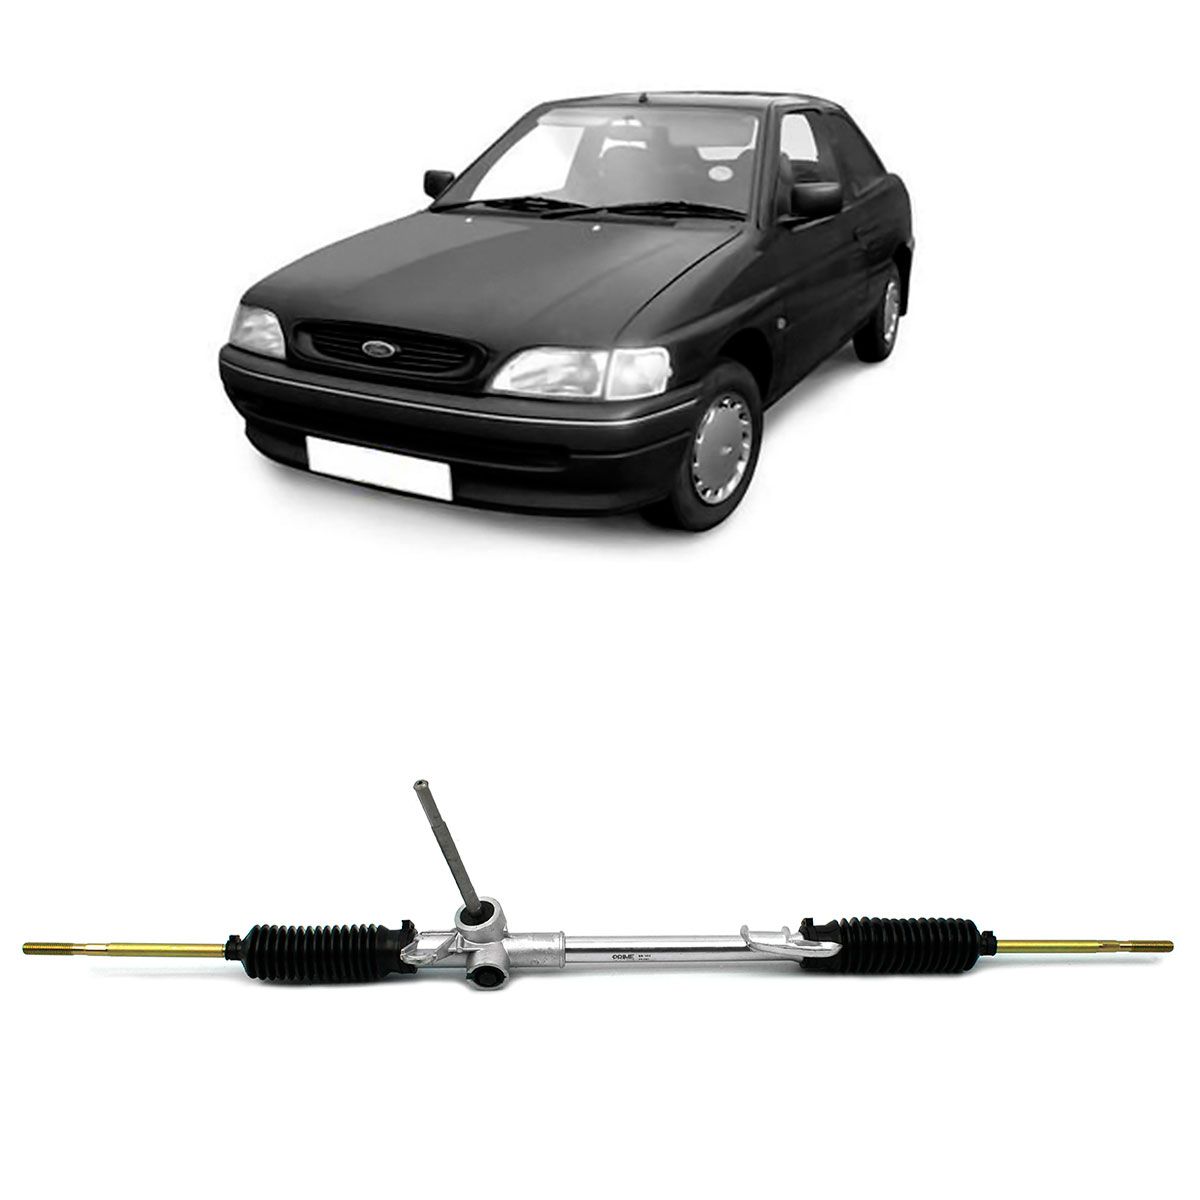 Caixa de Direção Mecânica Ais Prime Ford Escort e Verona / Volkswagen Logus e Pointer de 1993 até 1997